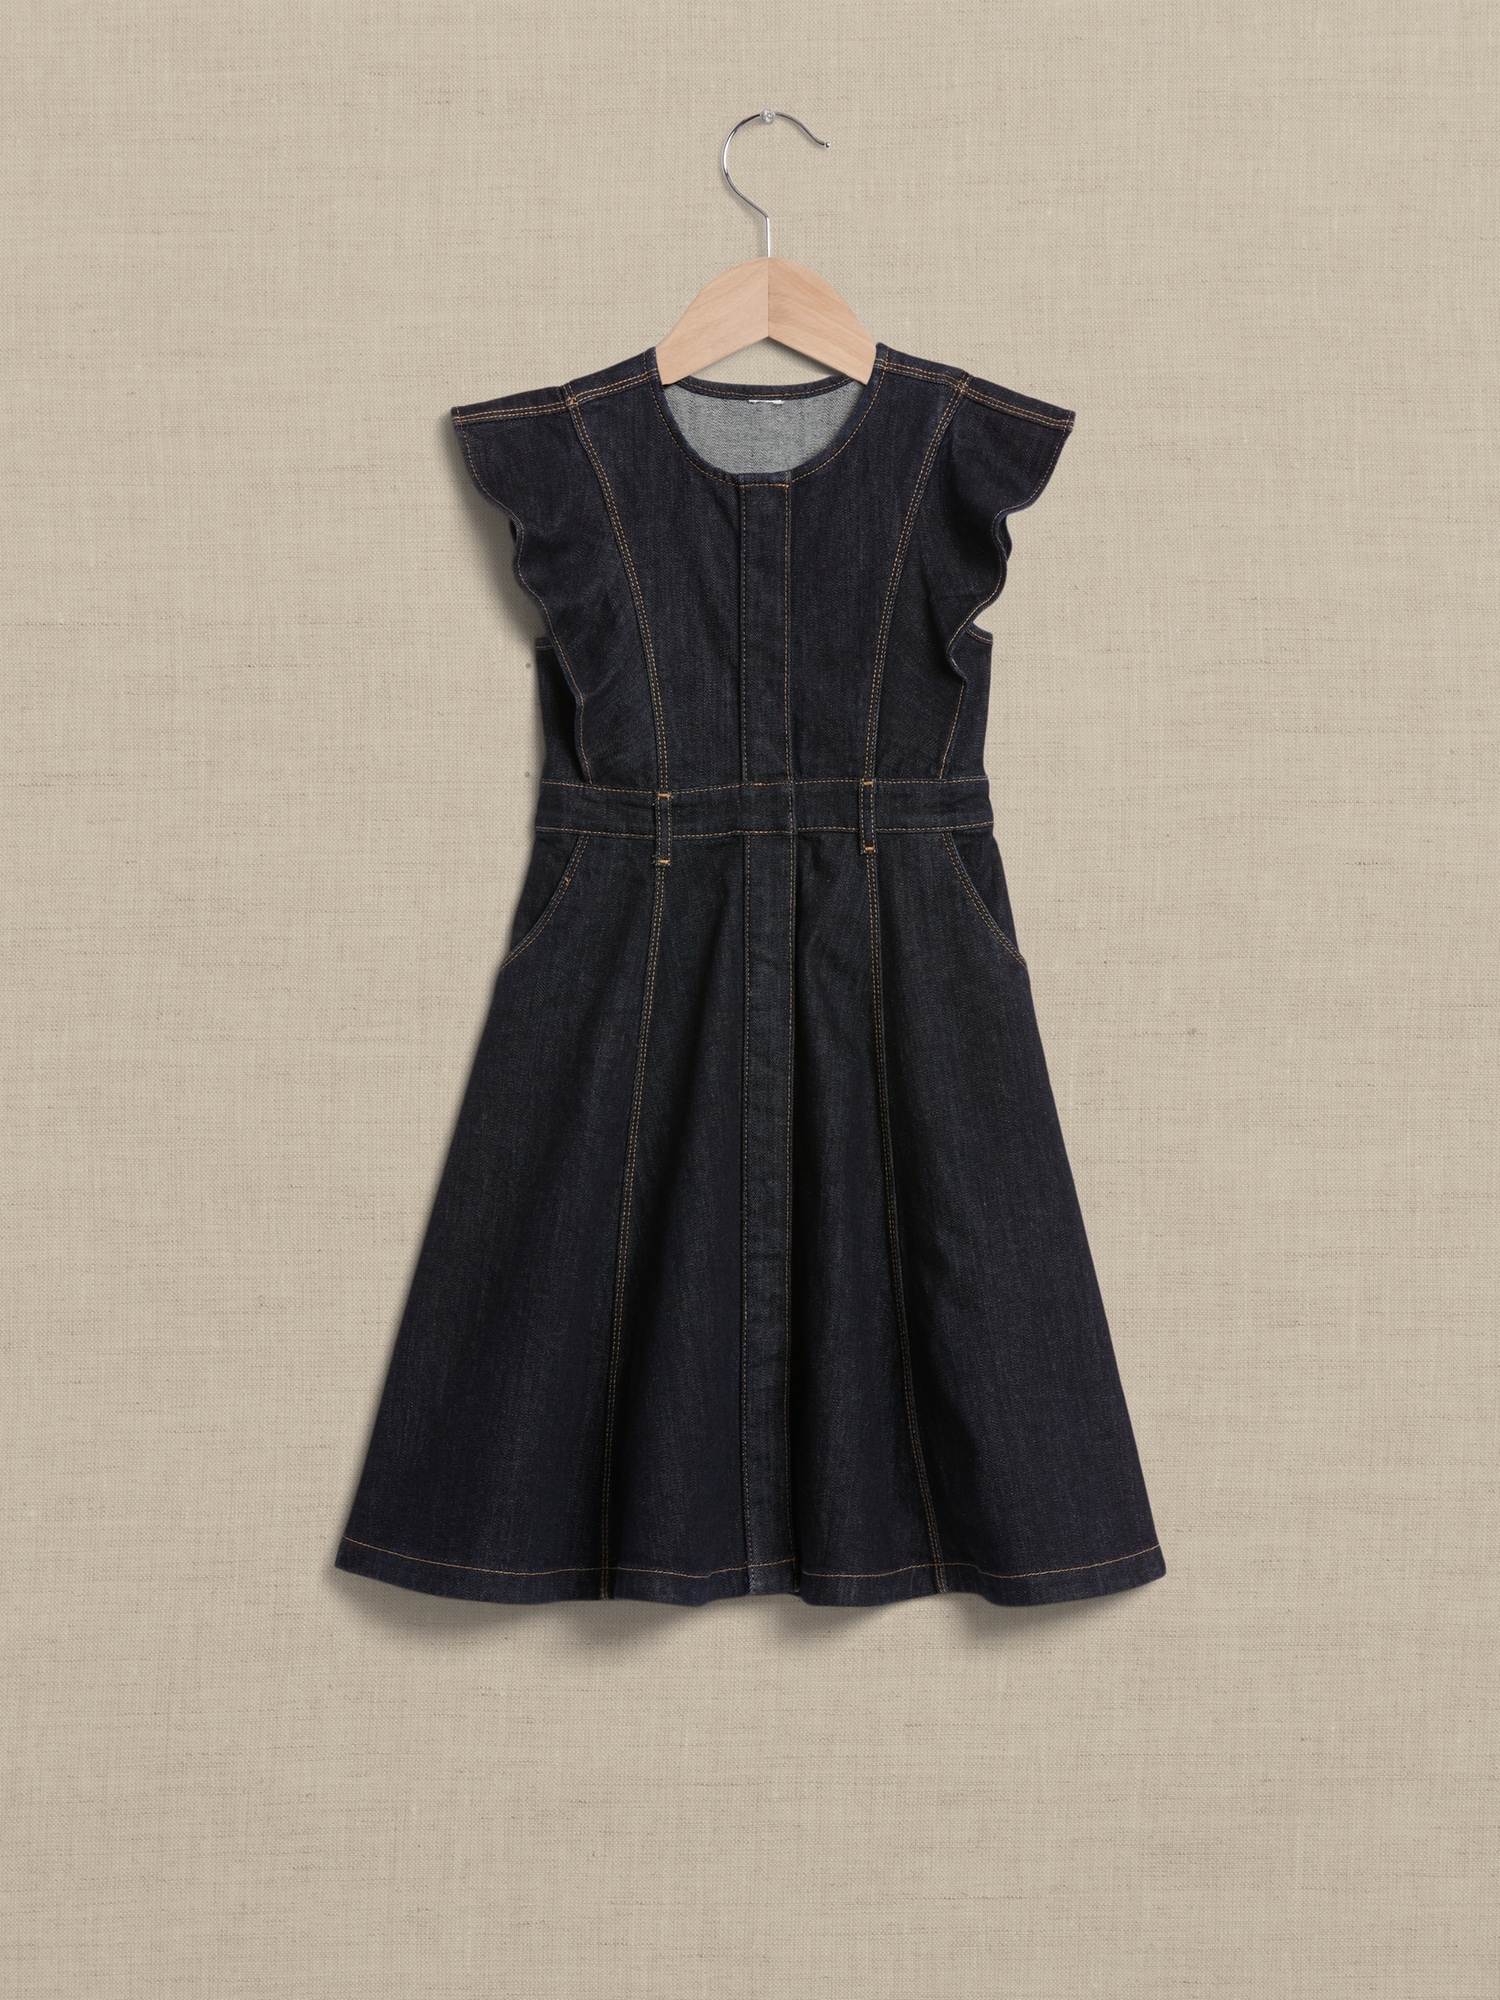 Banana Republic Sleeveless Denim Dress Women's Size 2 Dark Rinse Wash Slit  Neck | eBay